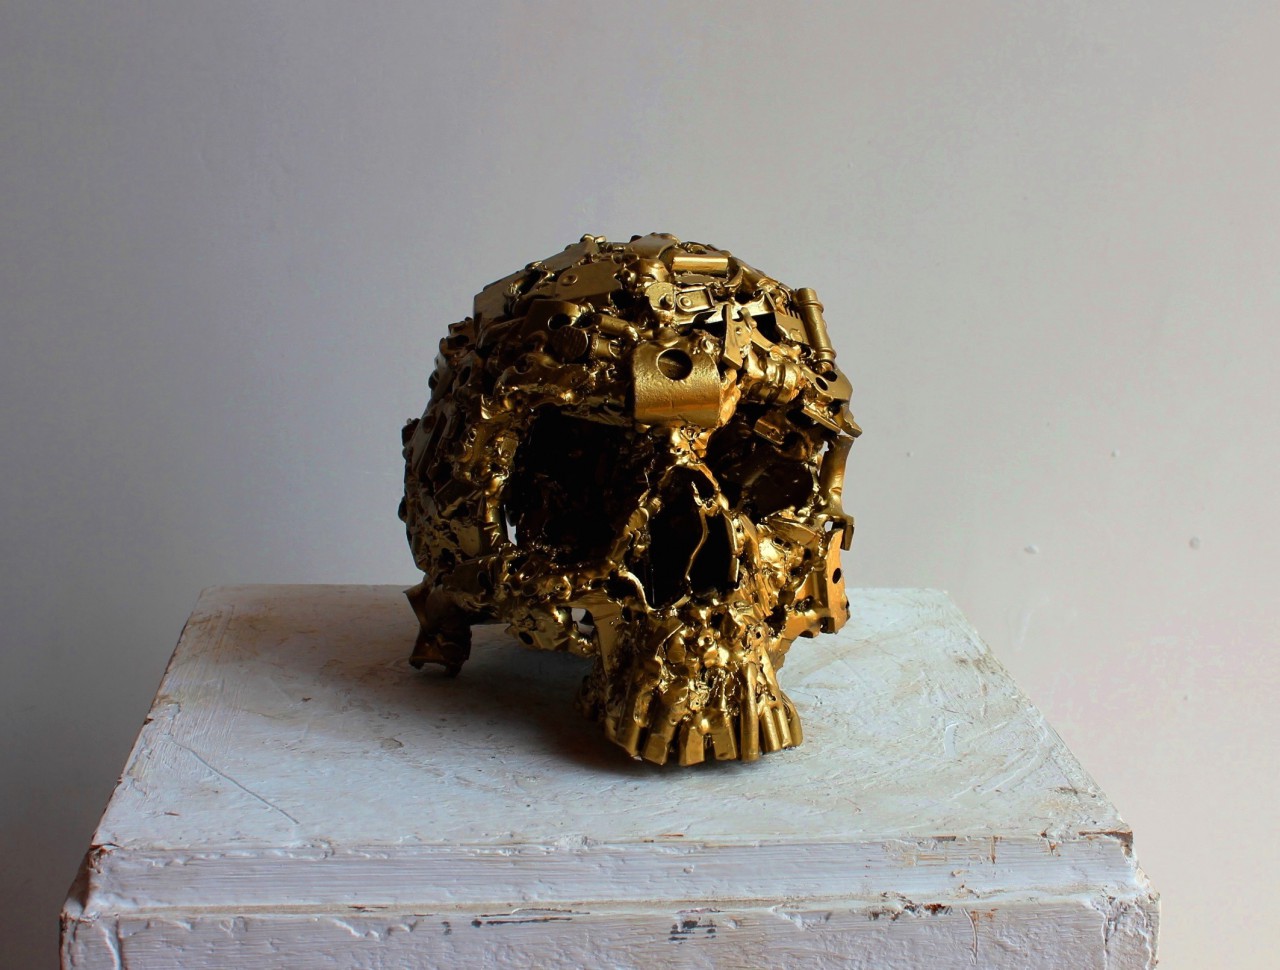 Gold skull